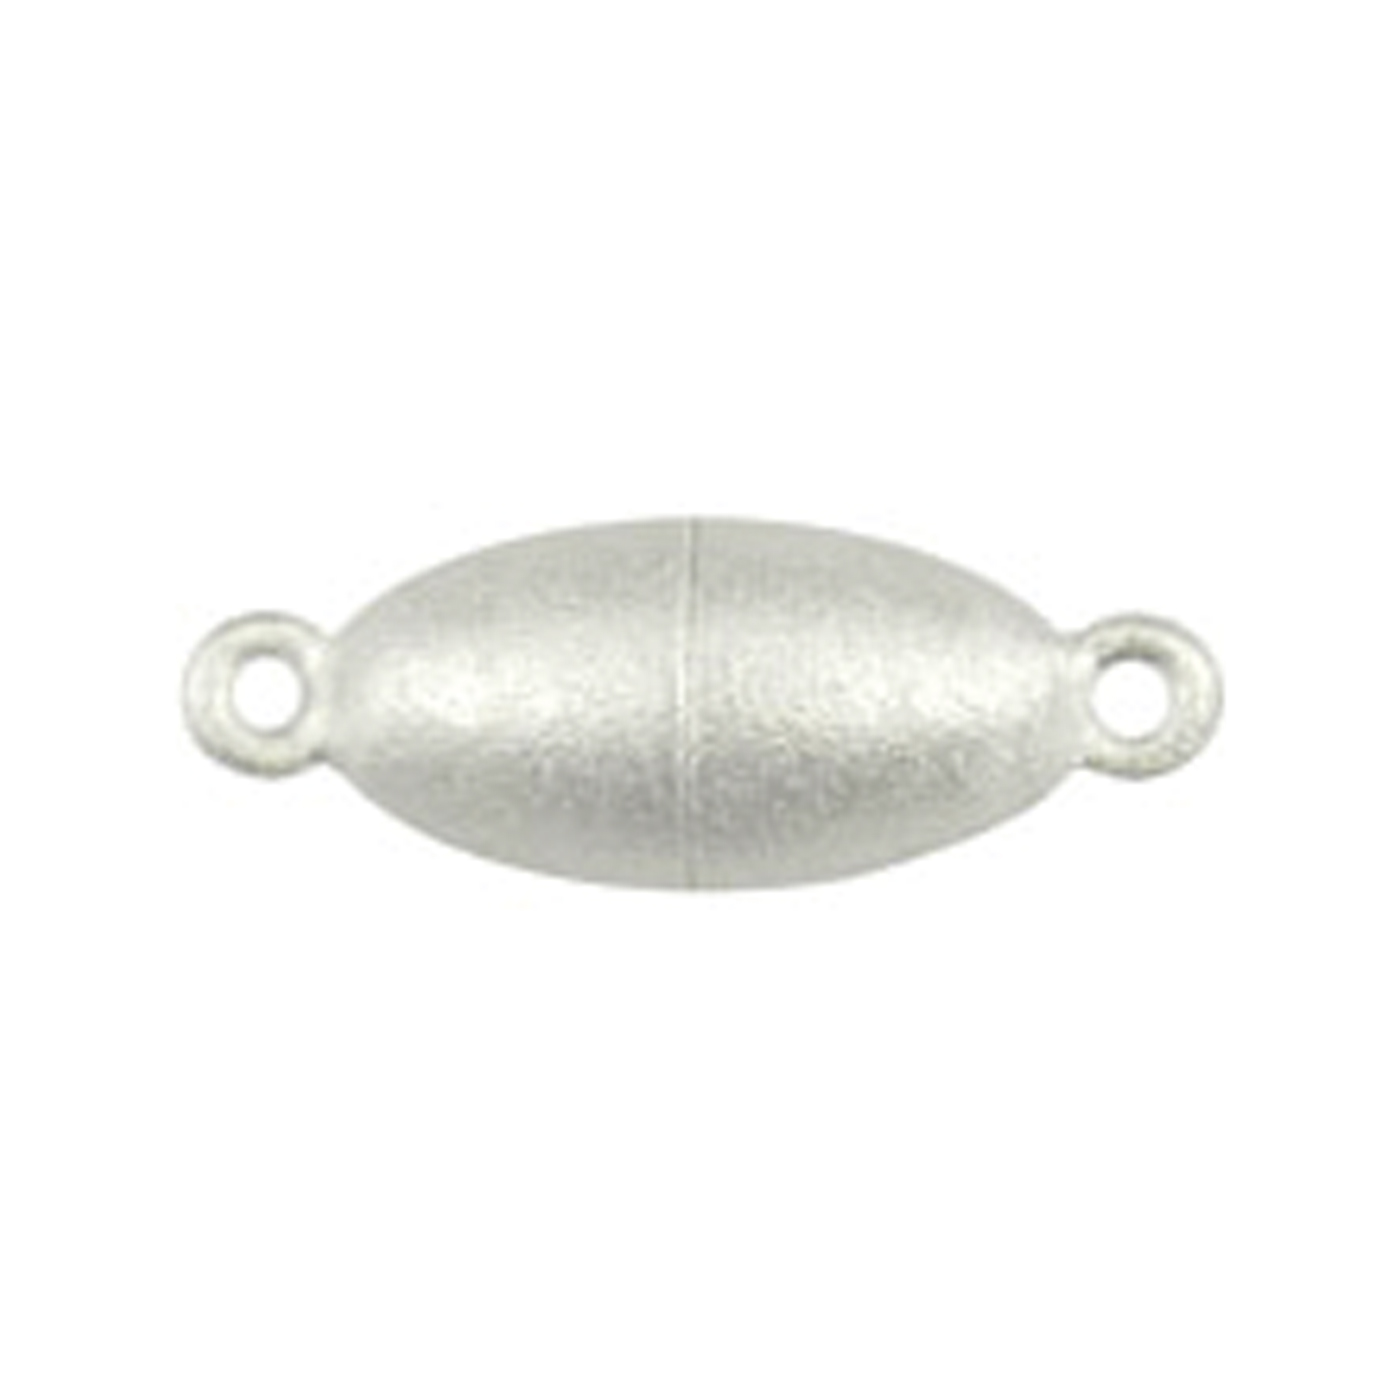 Langer Magnetschließen Magnetschließe, 925 Ag, Olive, ø 6,5 mm, mattiert - 1 Stück